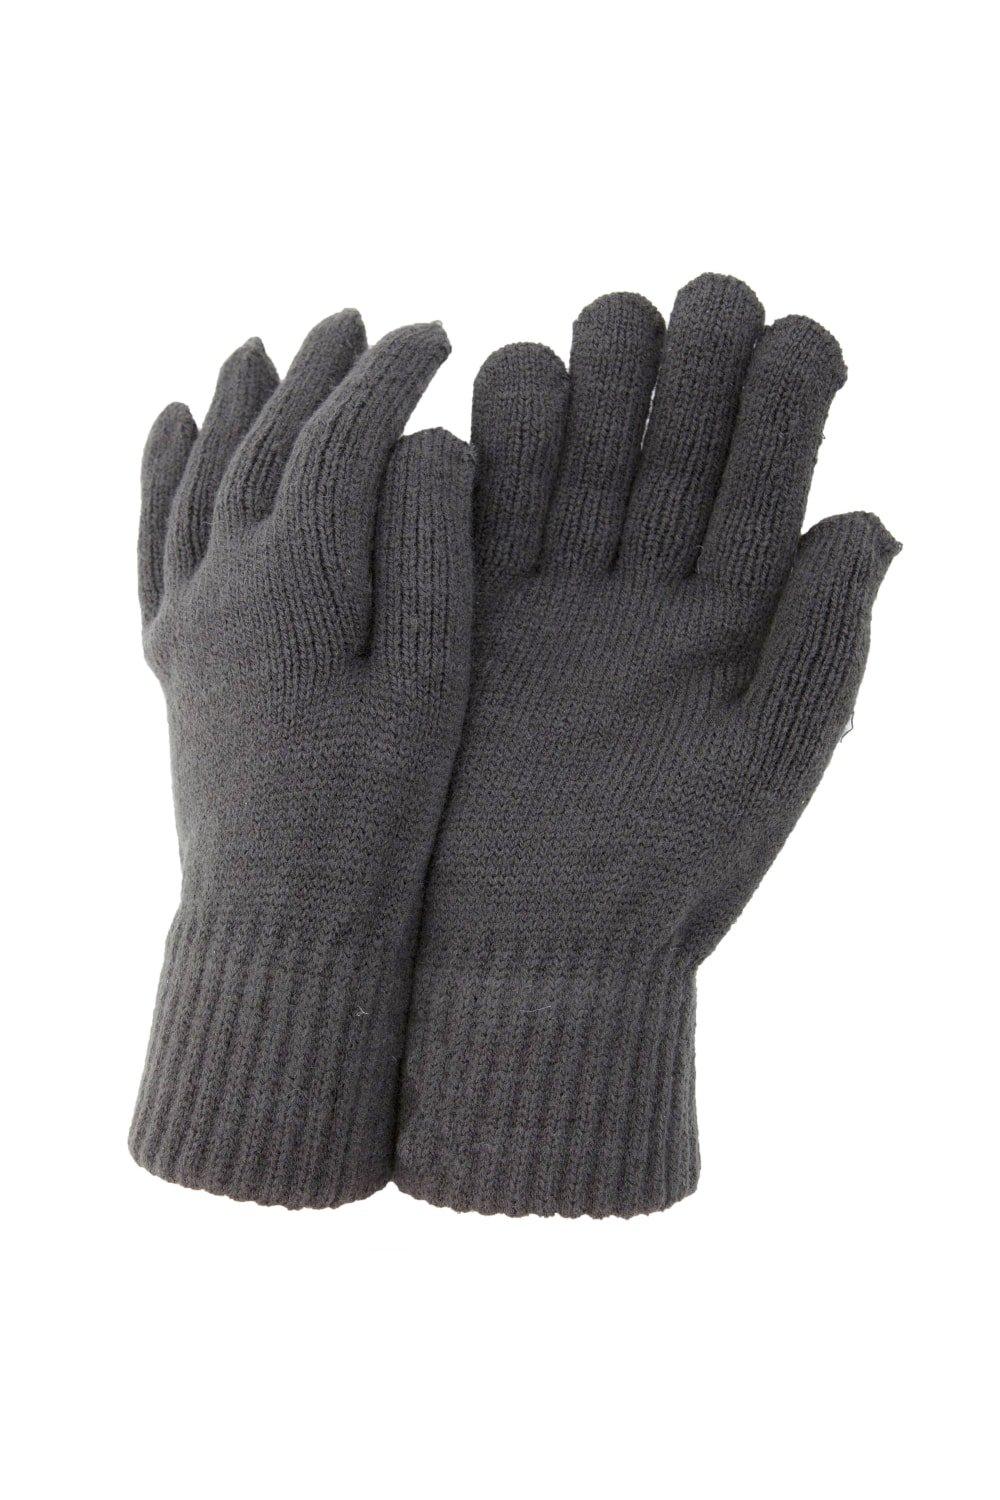 РАСПРОДАЖА - Термовязаные зимние перчатки Universal Textiles, серый распродажа термовязаные зимние перчатки universal textiles серый